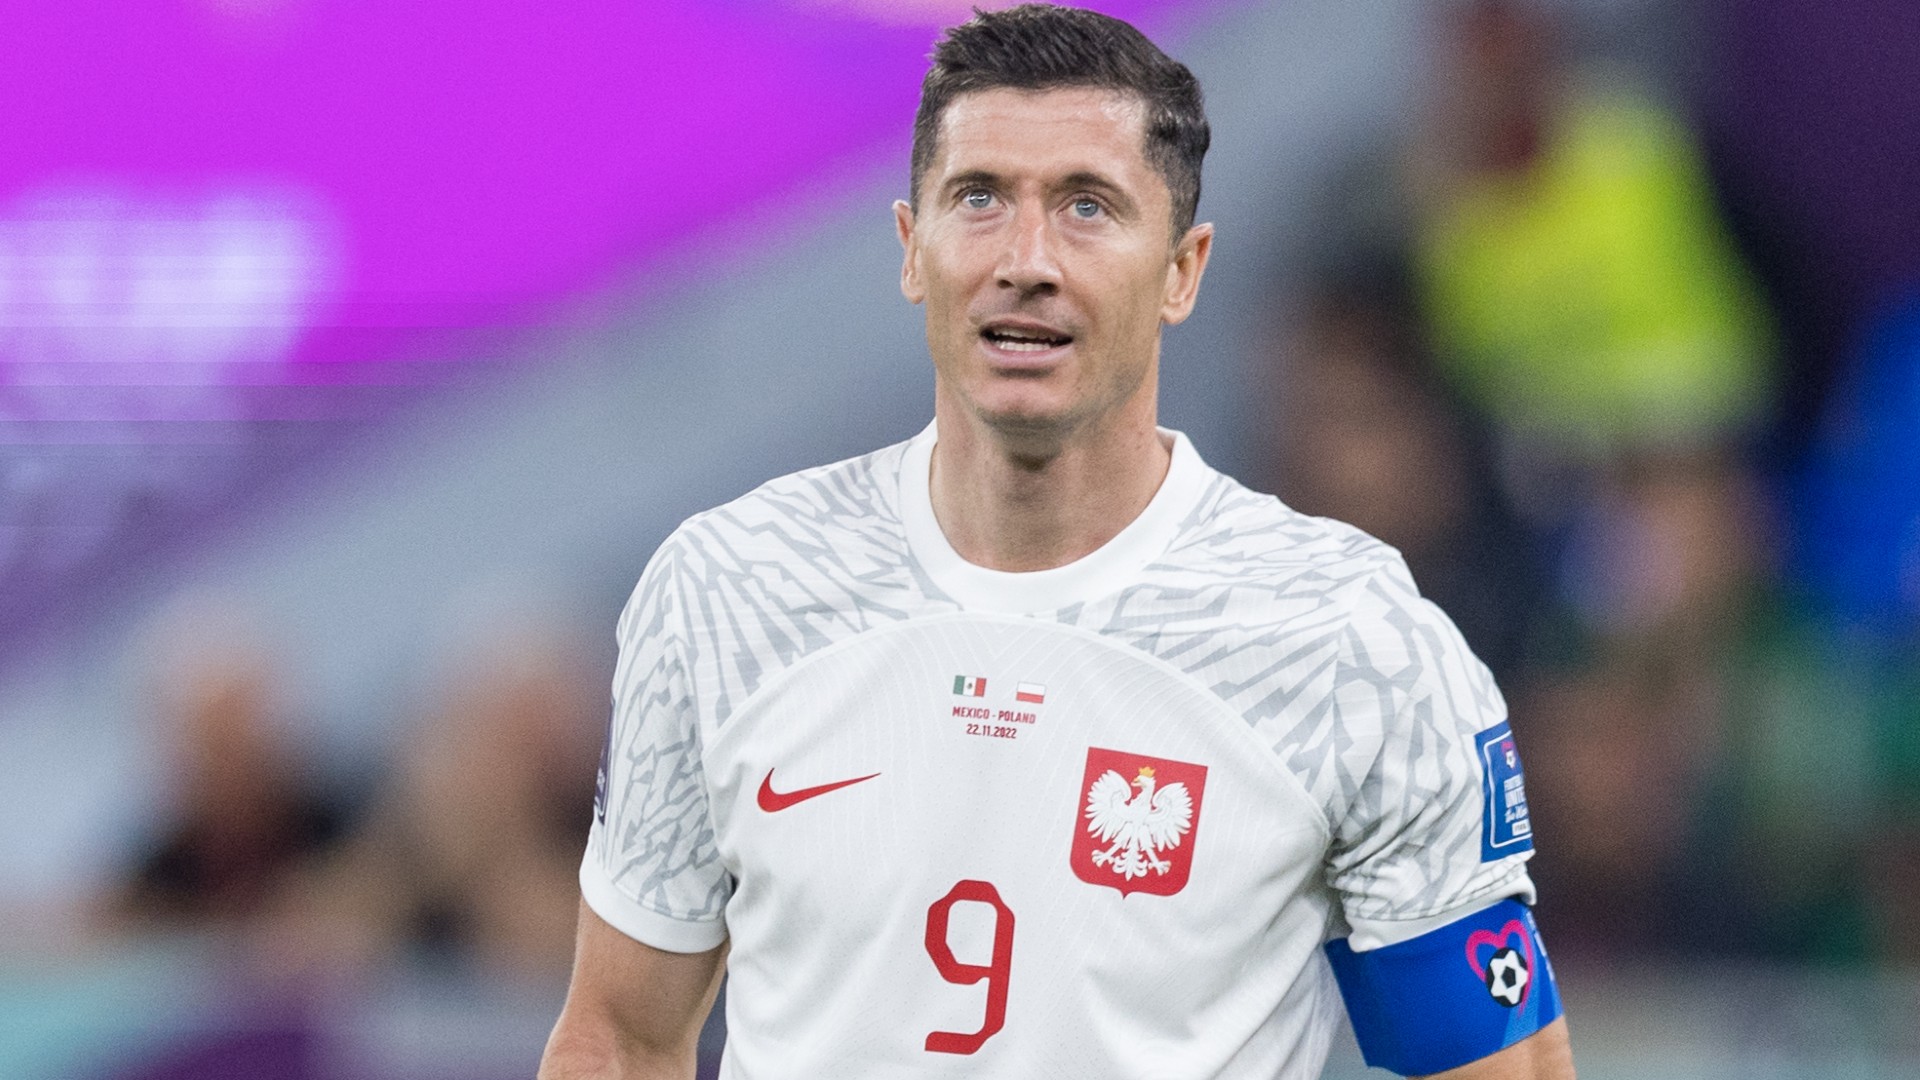 El técnico de Polonia respaldó a Lewandowski: "Es el mejor delantero del mundo"